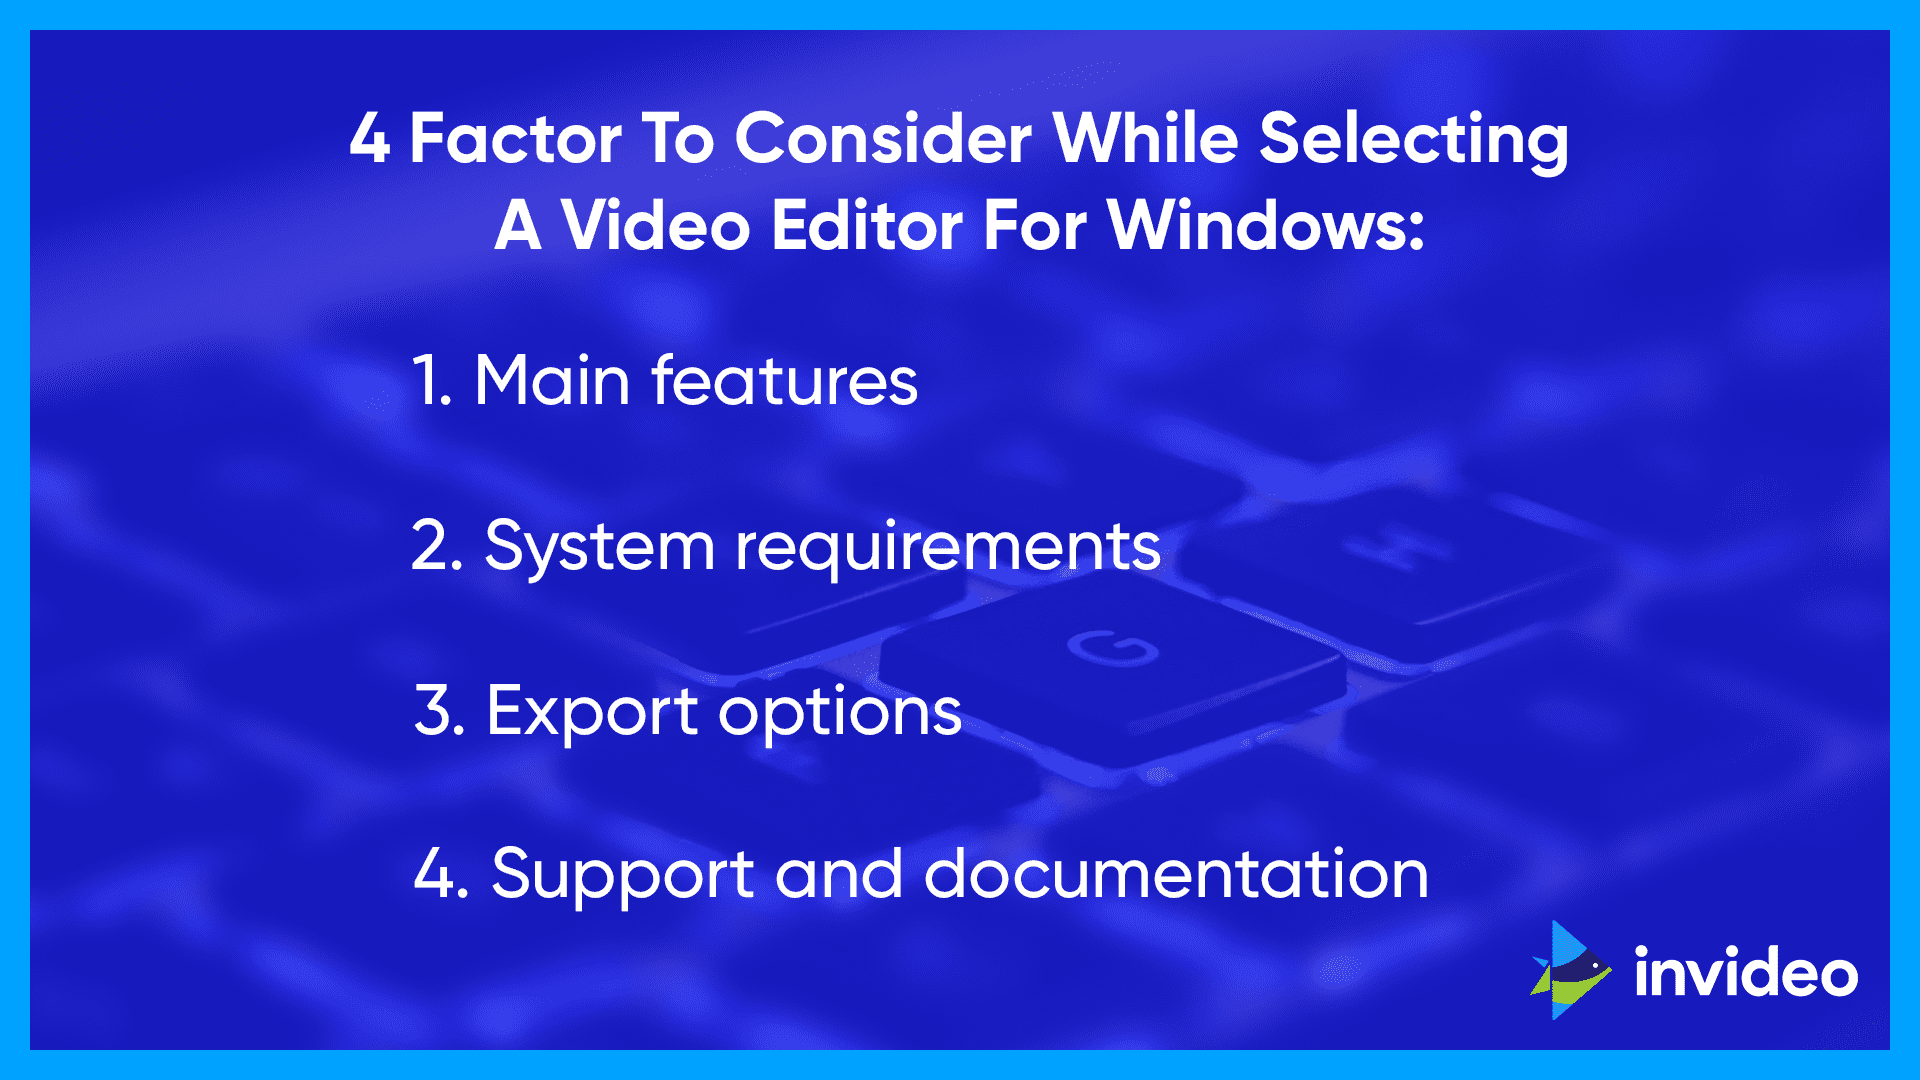 факторы, которые следует учитывать при выборе видеоредактора для Windows